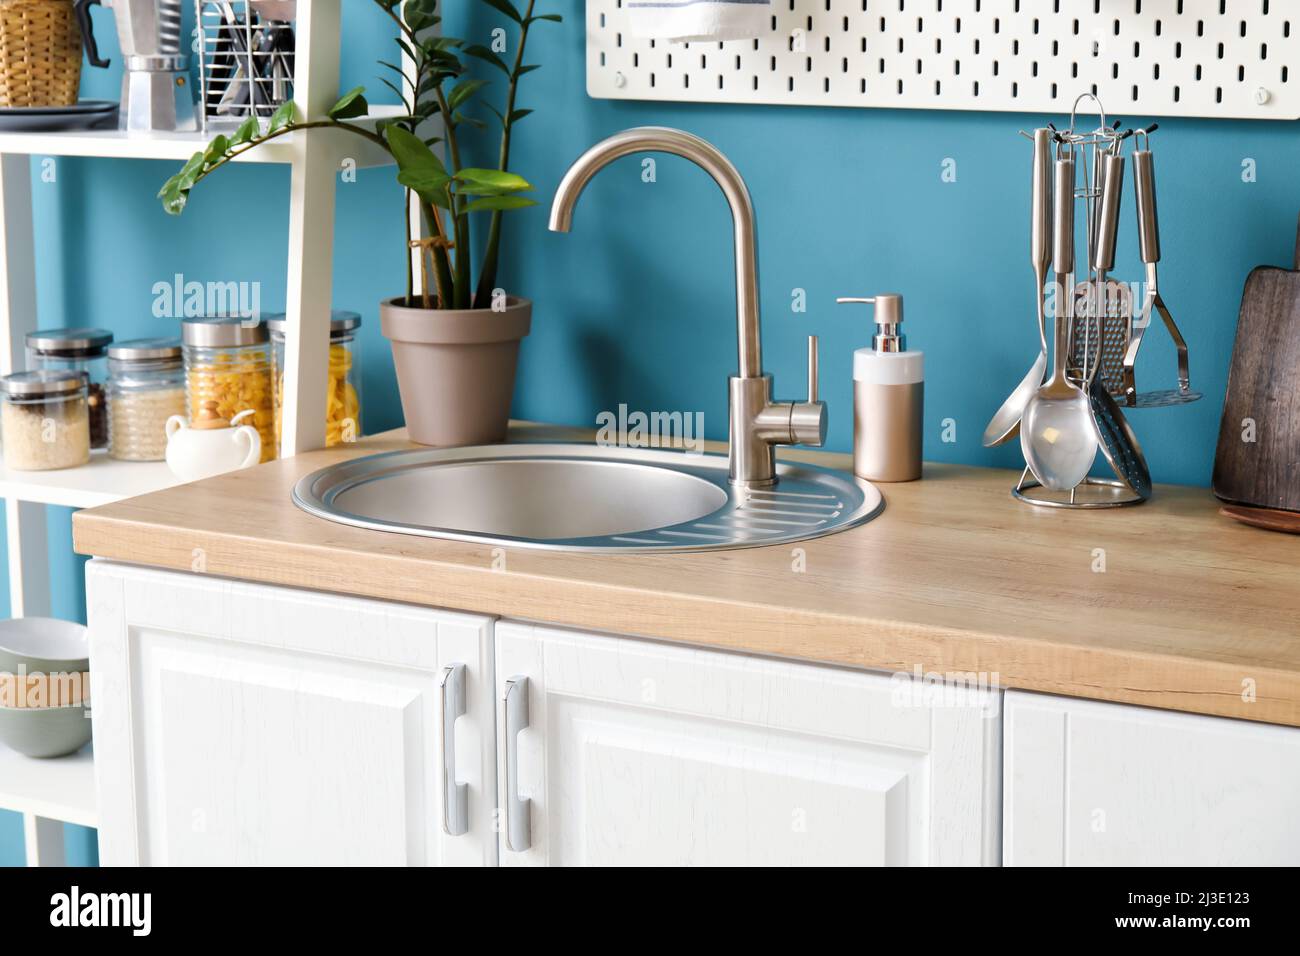 Comptoir en bois avec évier en argent, batterie de cuisine, lave-vaisselle  et savon près du mur bleu dans la cuisine Photo Stock - Alamy